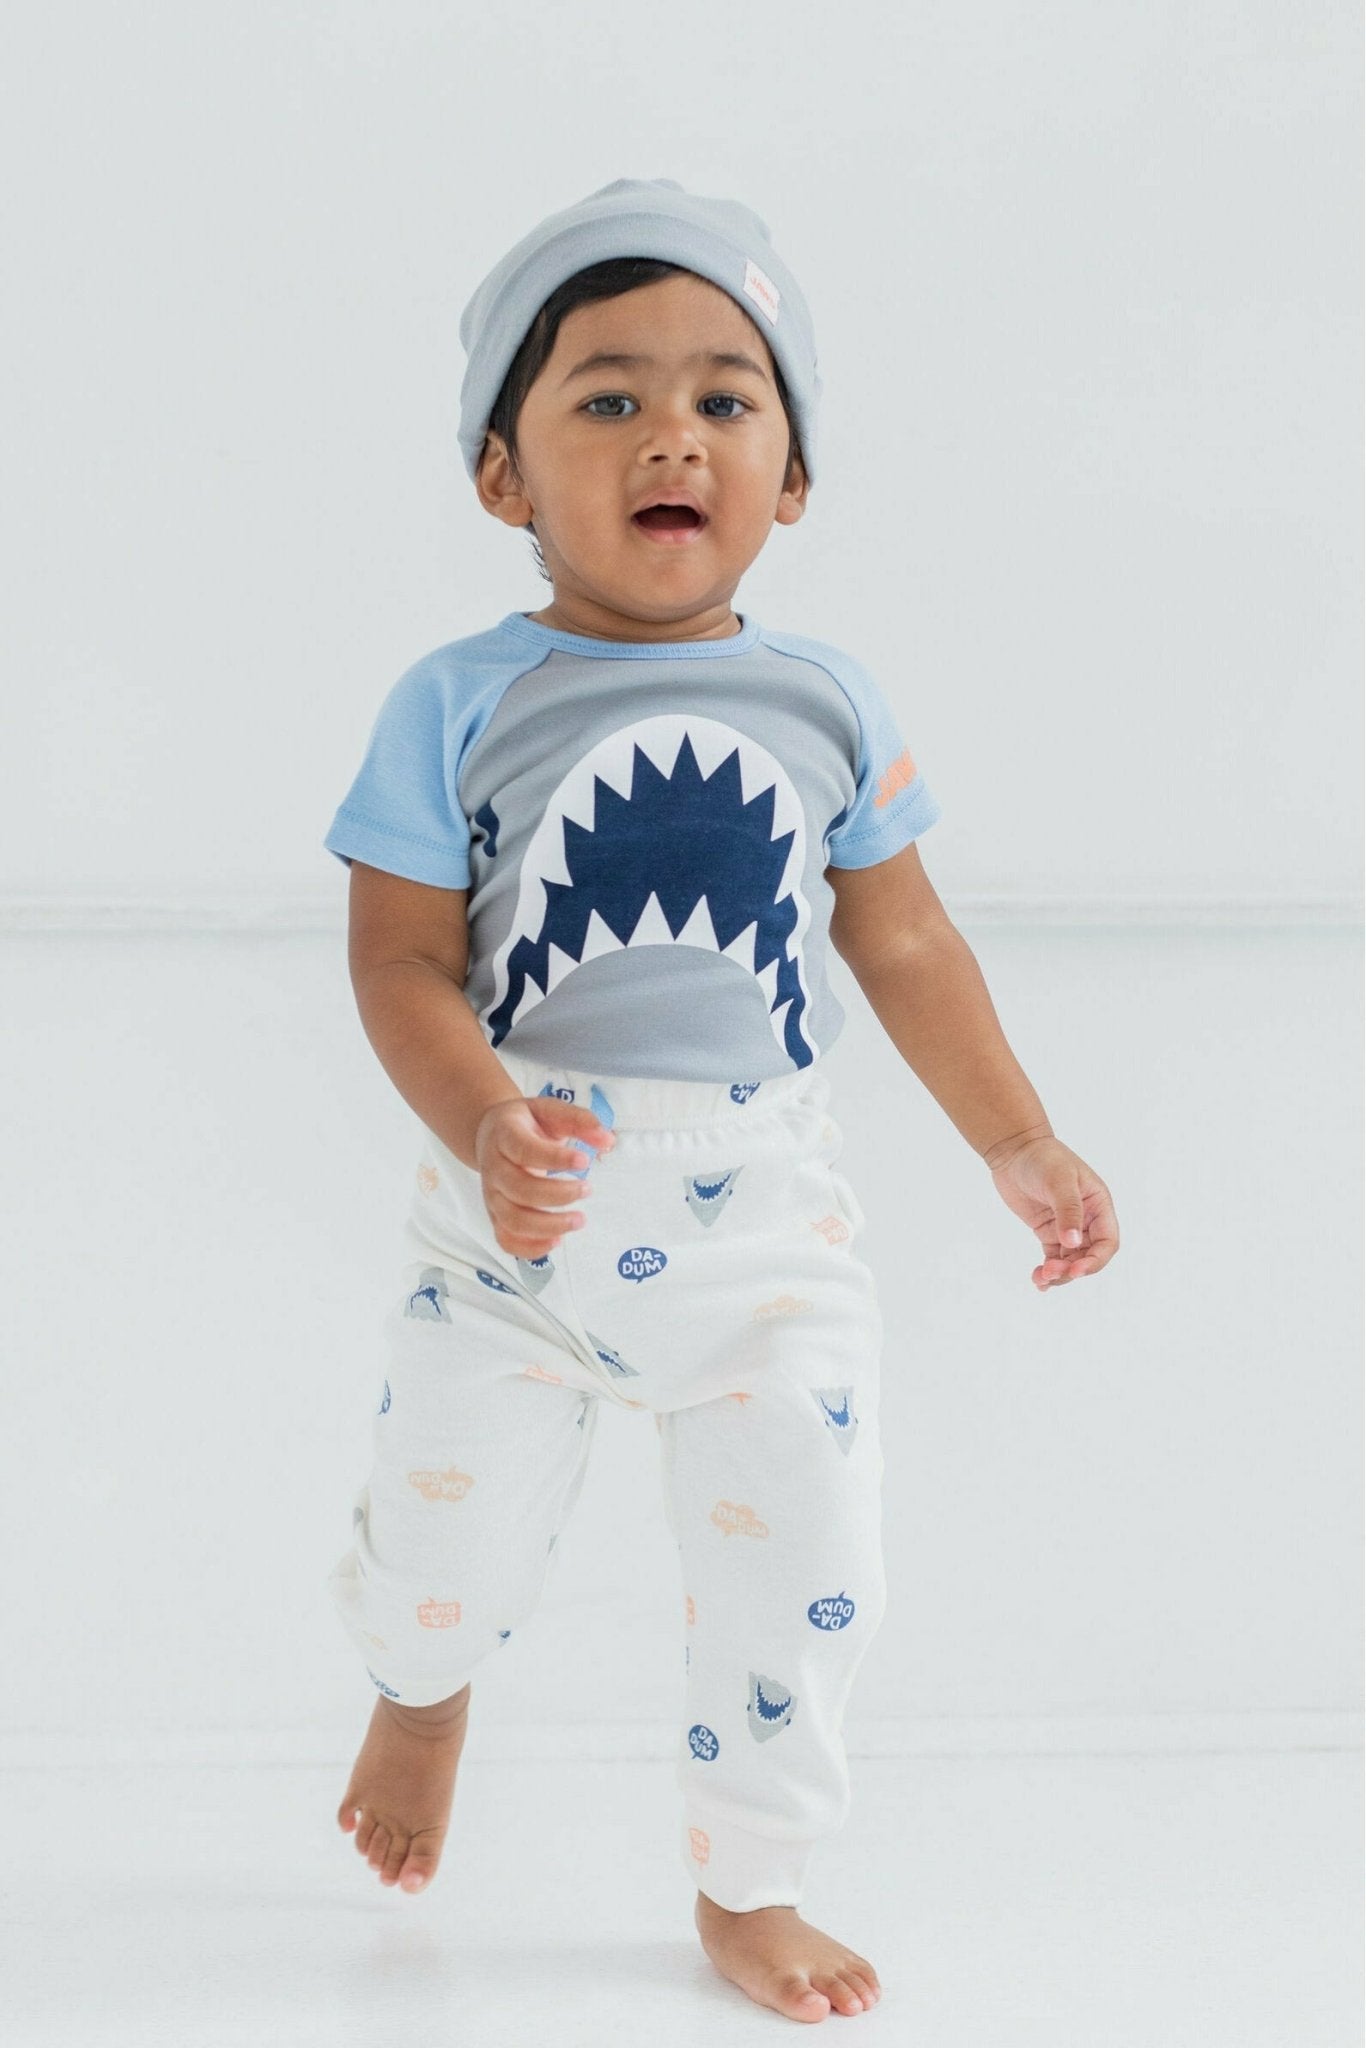 JAWS Shark 3 Piece Outfit Set: Bodysuit Pants Hat - imagikids